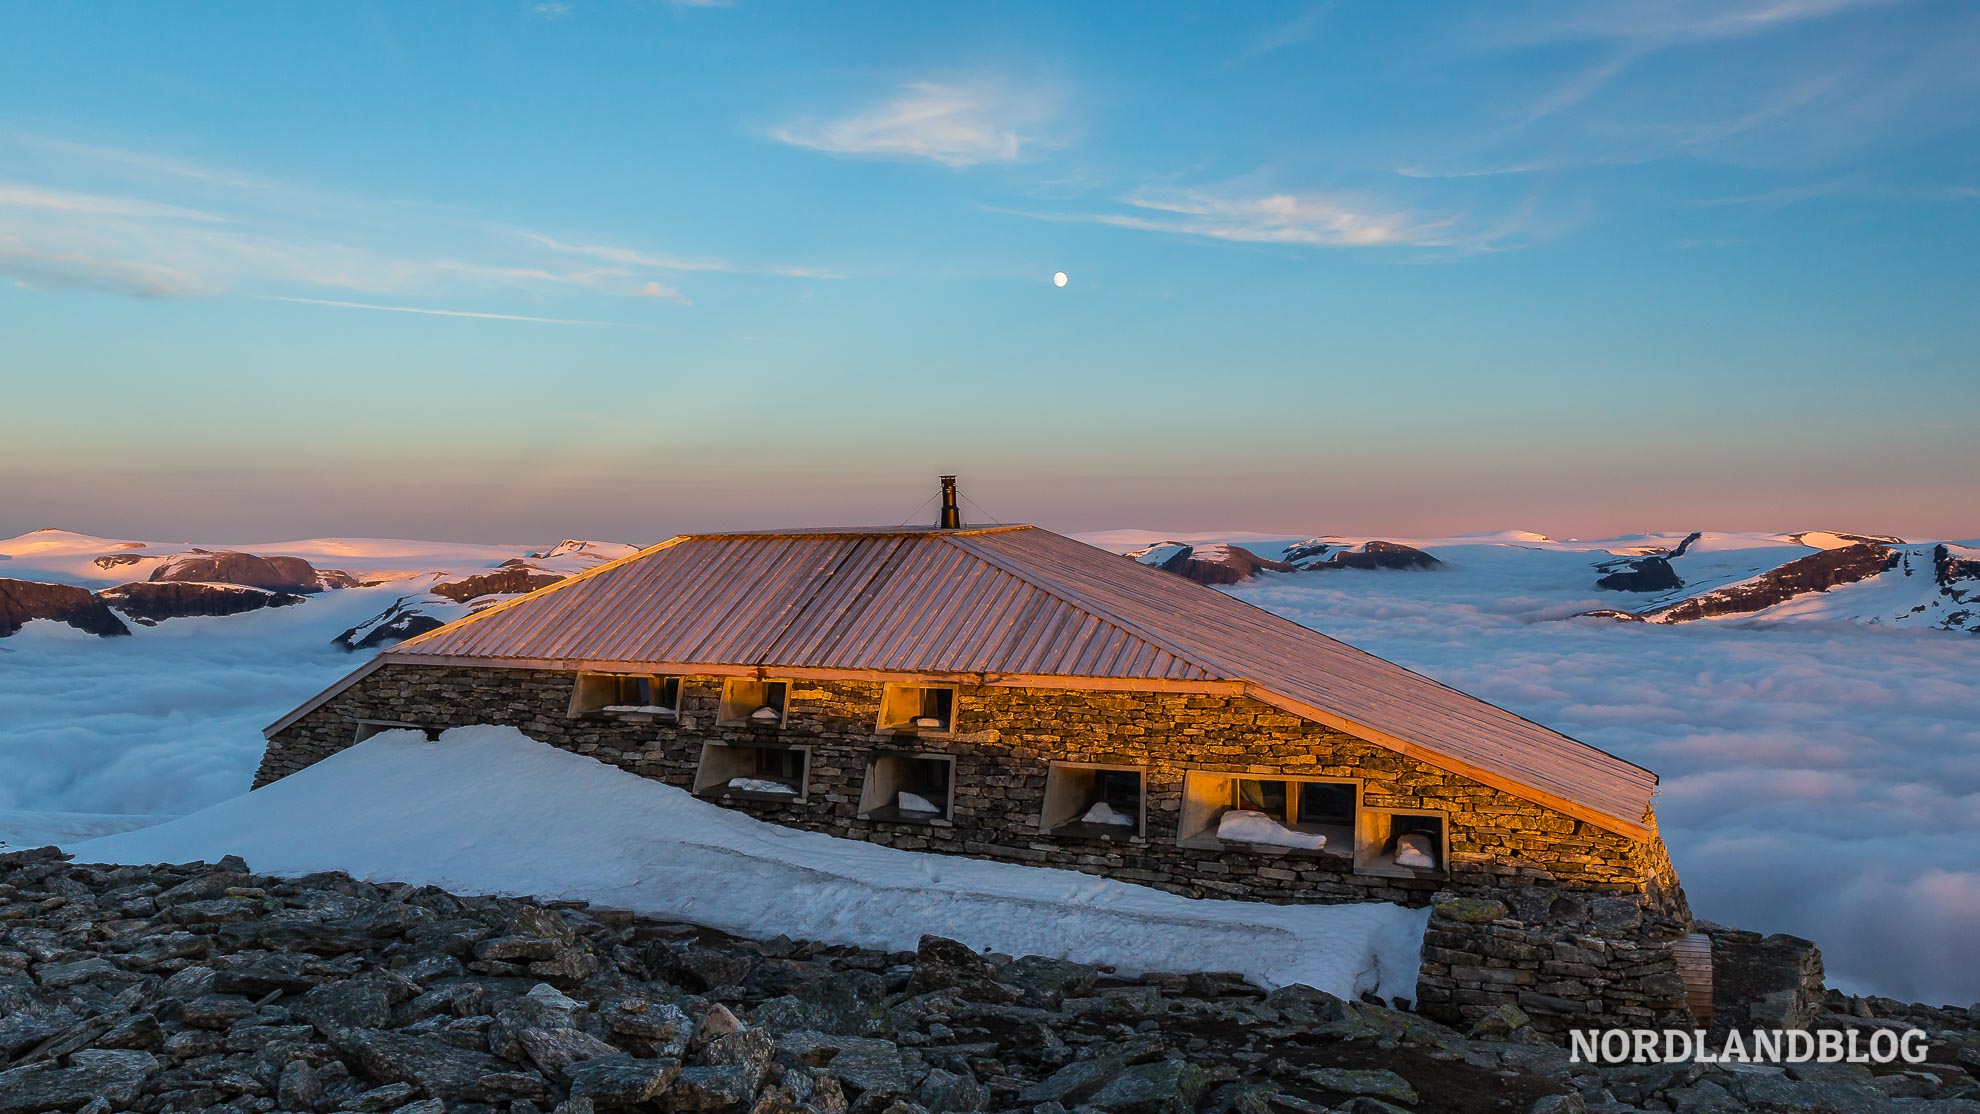 DNT Hütte auf dem Gipfel des Skåla am Nordfjord (Übernachten in Norwegen) Nordlandblog